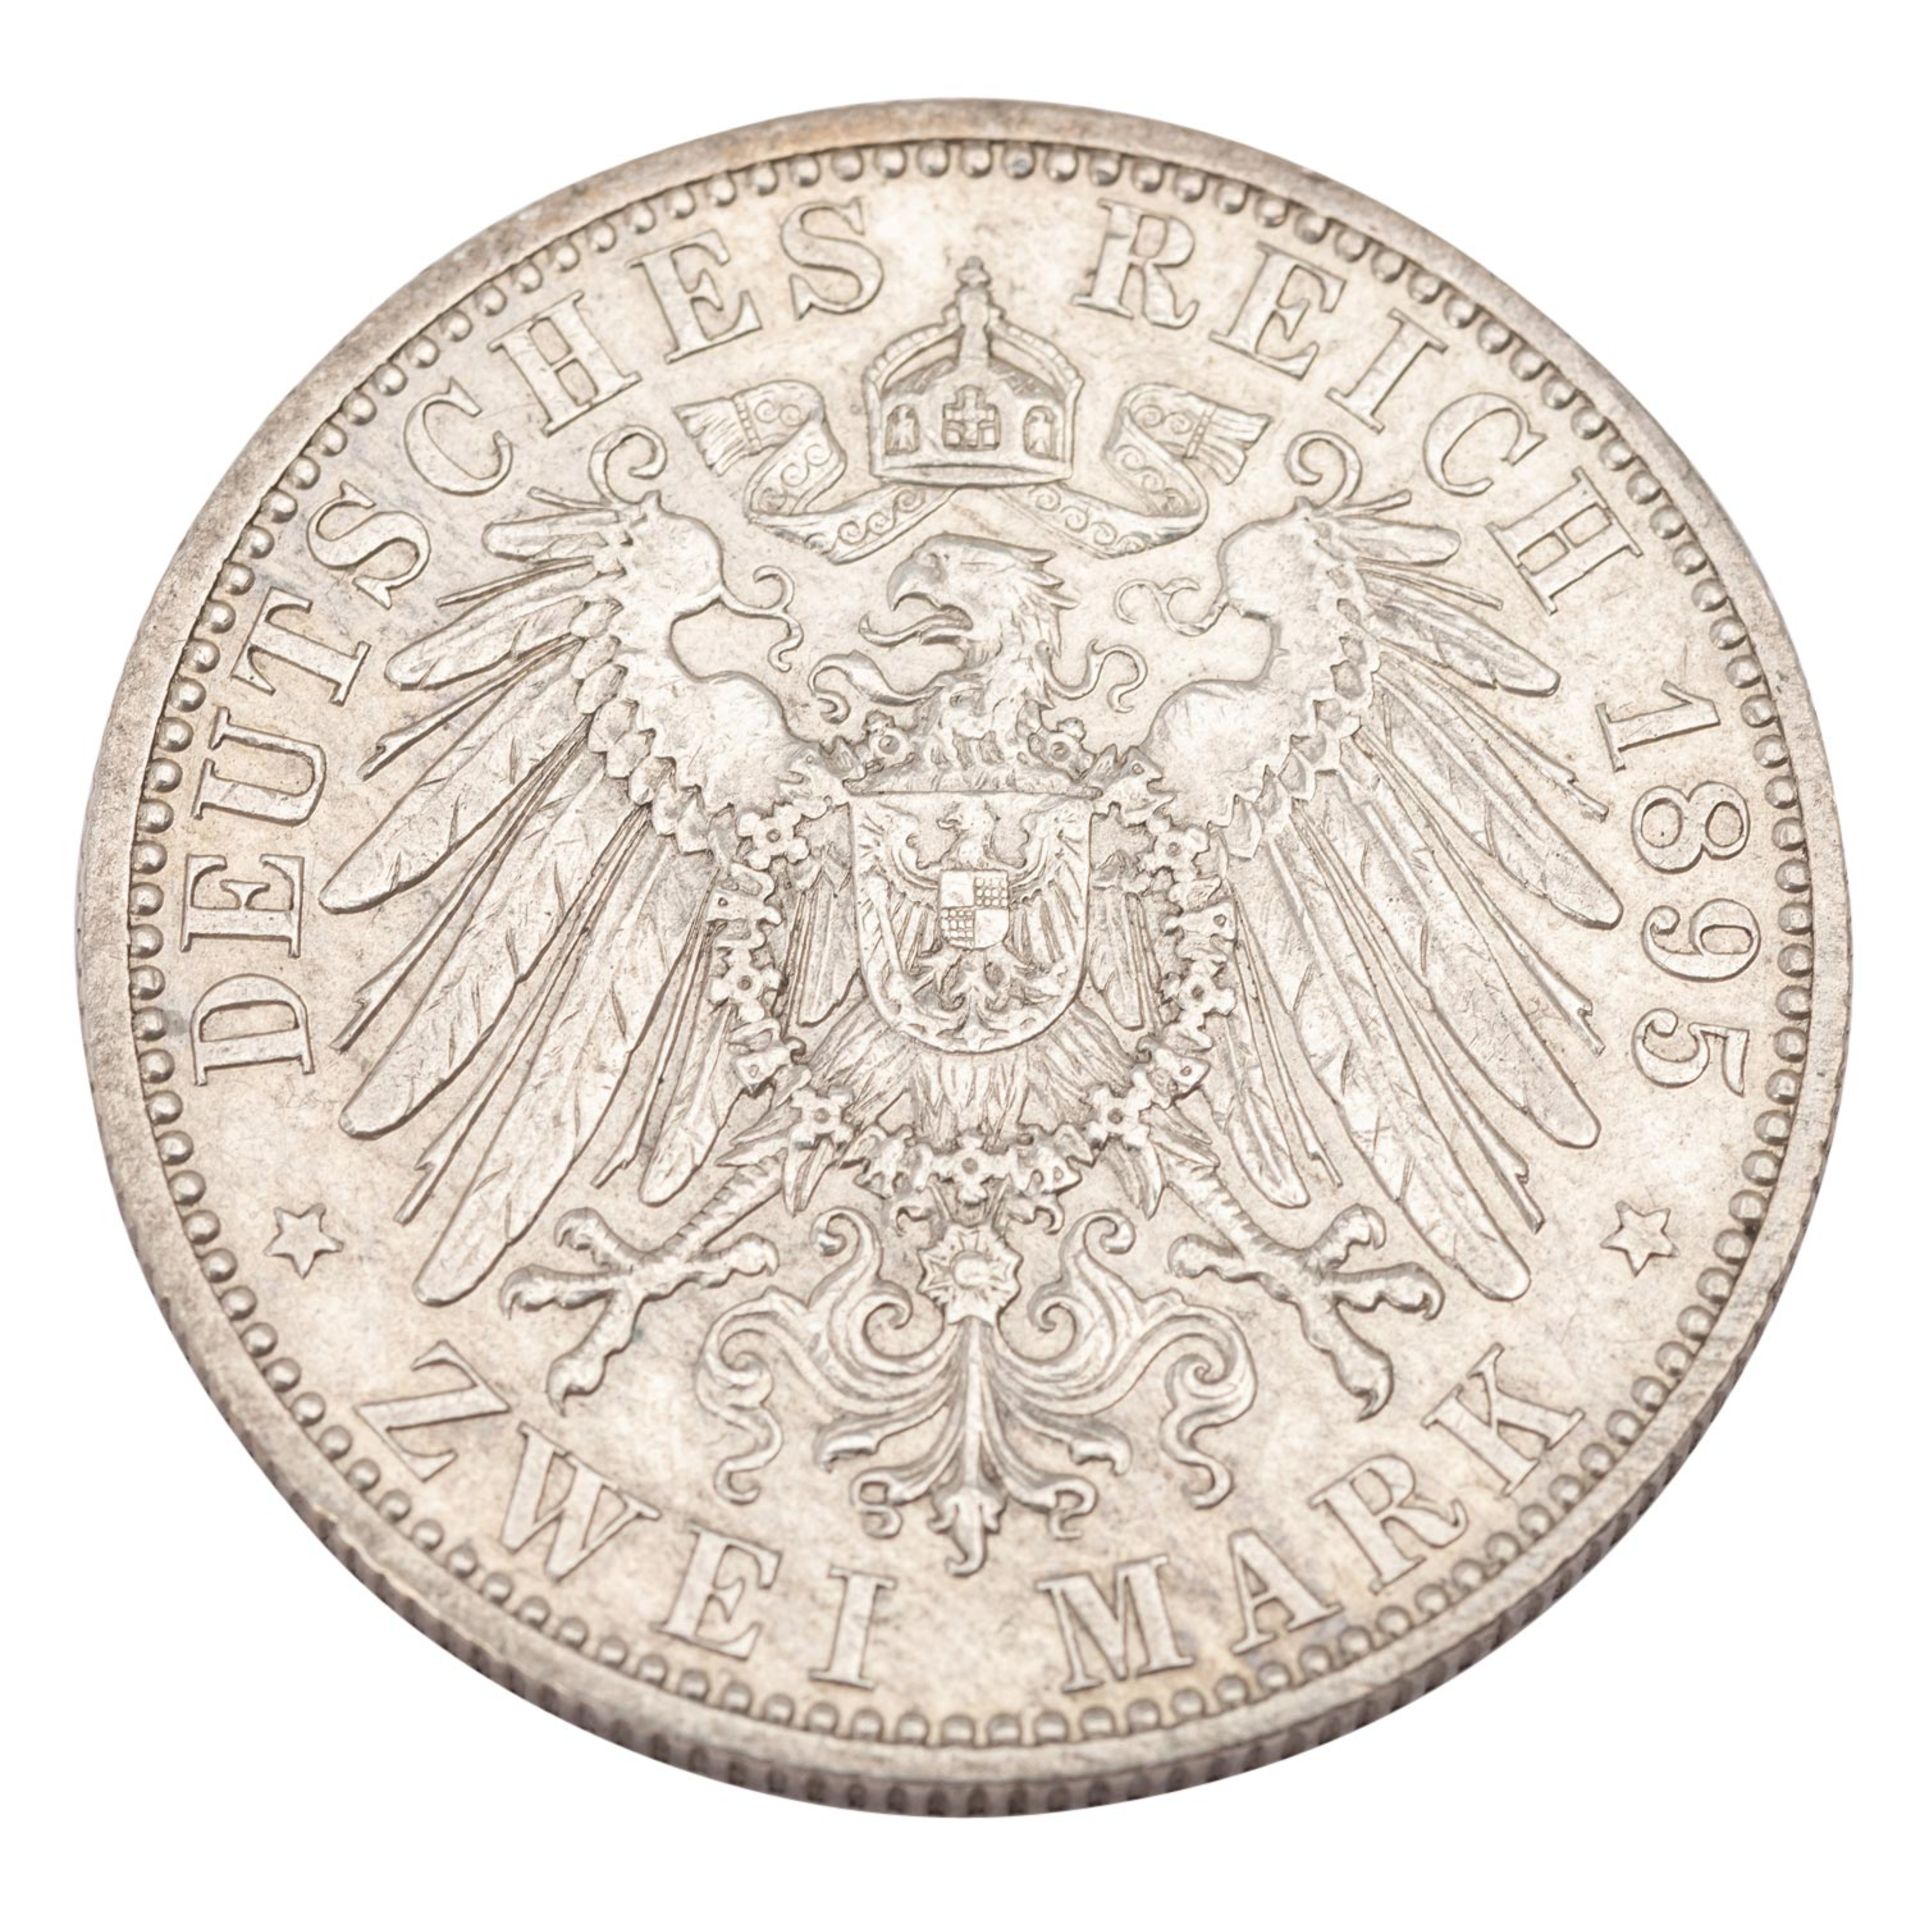 Deutsches Kaiserreich / Sachsen, Coburg, Gotha - 2 Mark 1901, Herzog Alfred, - Image 2 of 3